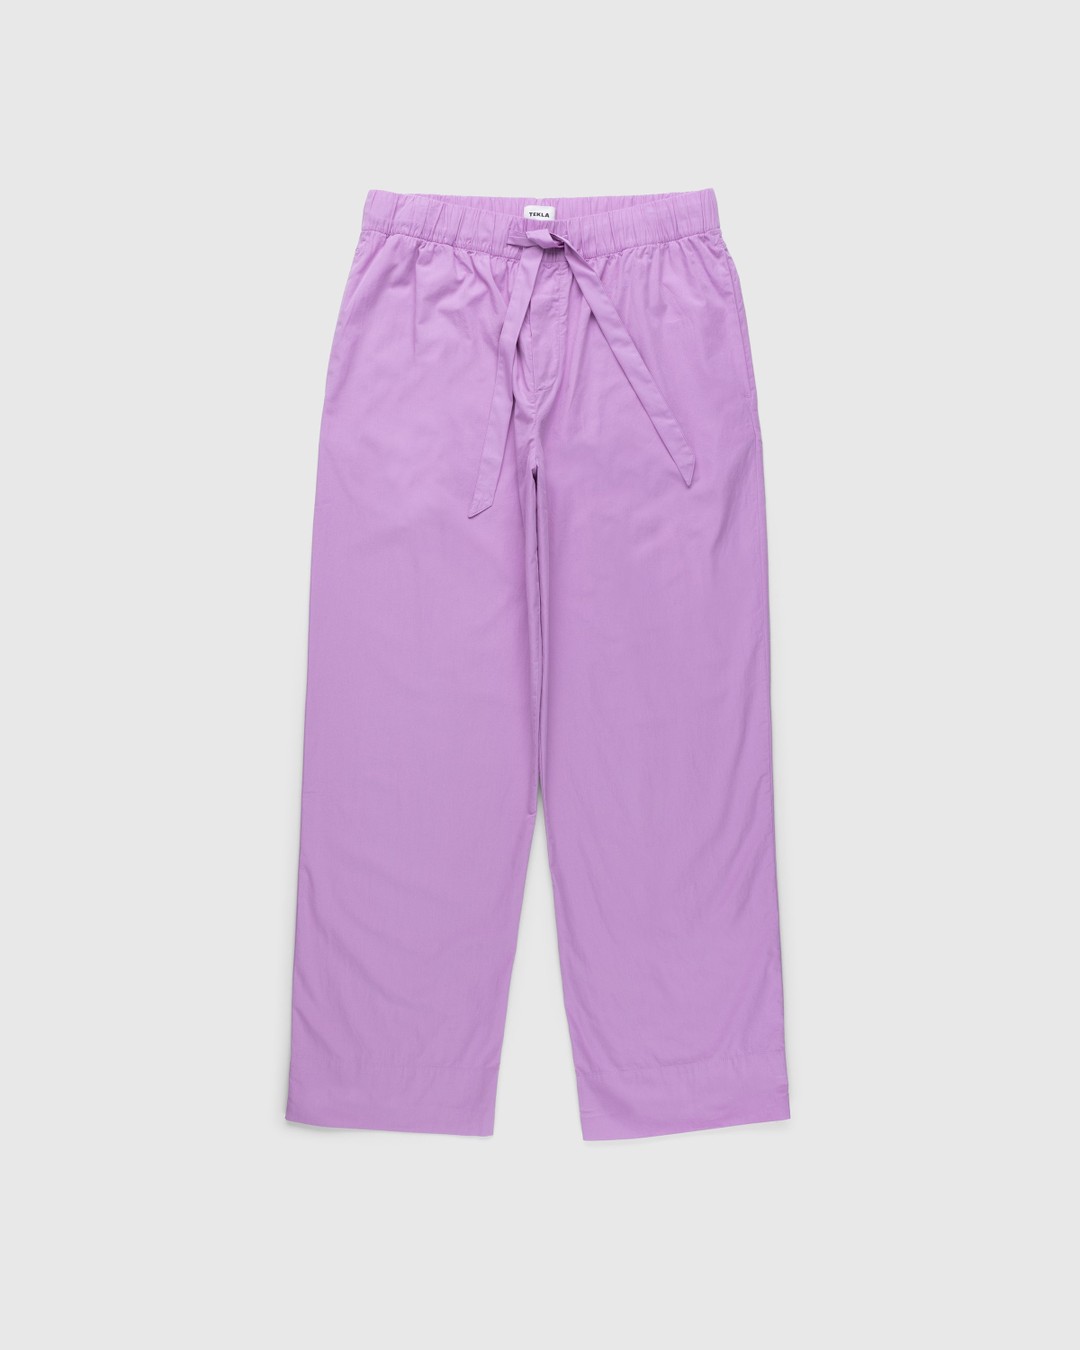 Tekla – Cotton Poplin Pyjamas Pants Purple Pink - Pyjamas - Pink - Image 1